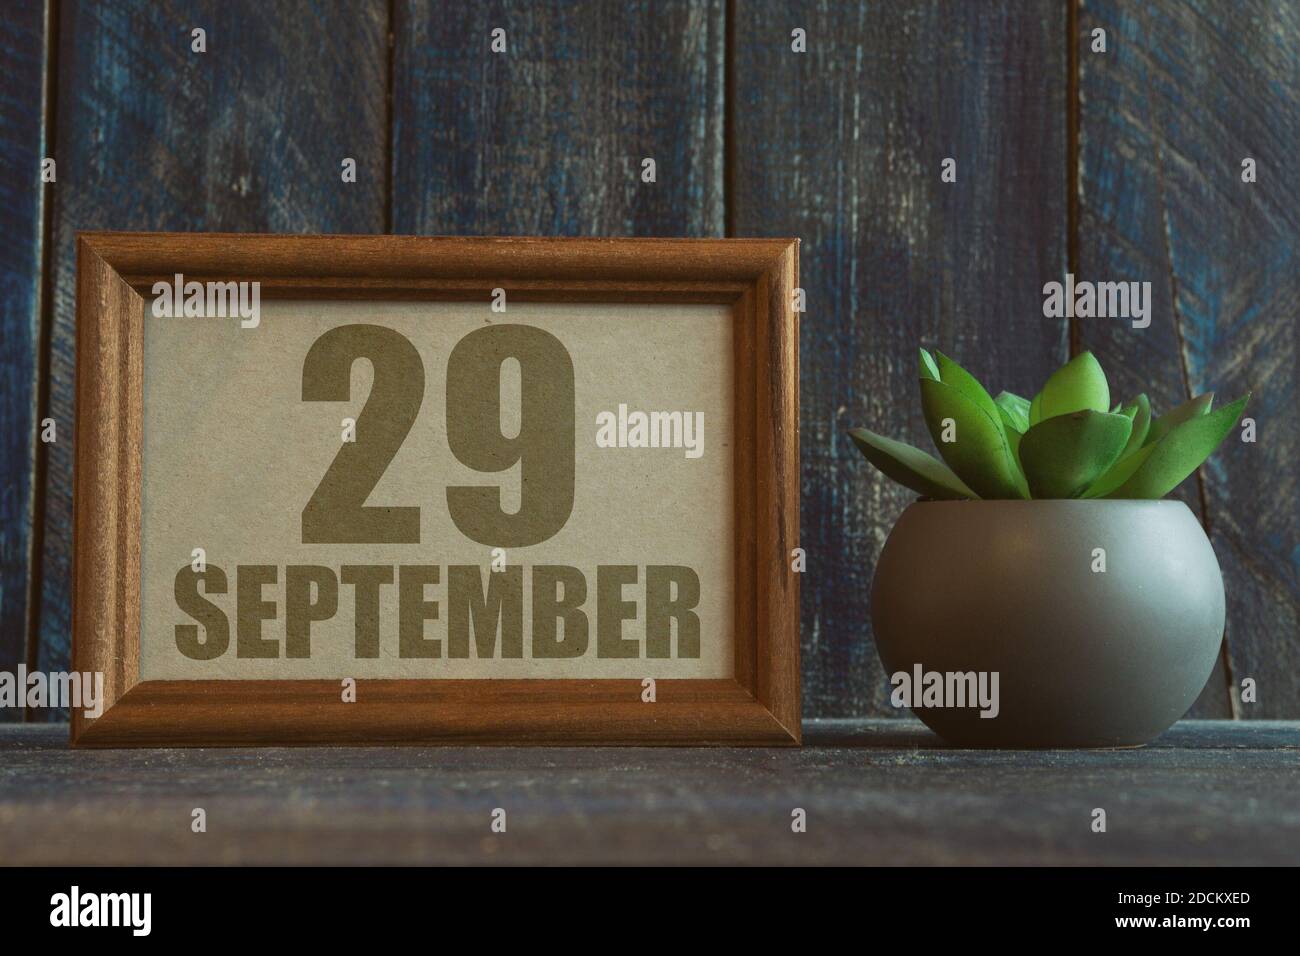 29 septembre. Jour 29 du mois, date dans le cadre à côté de succulent sur fond de bois automne mois, jour de l'année concept Banque D'Images